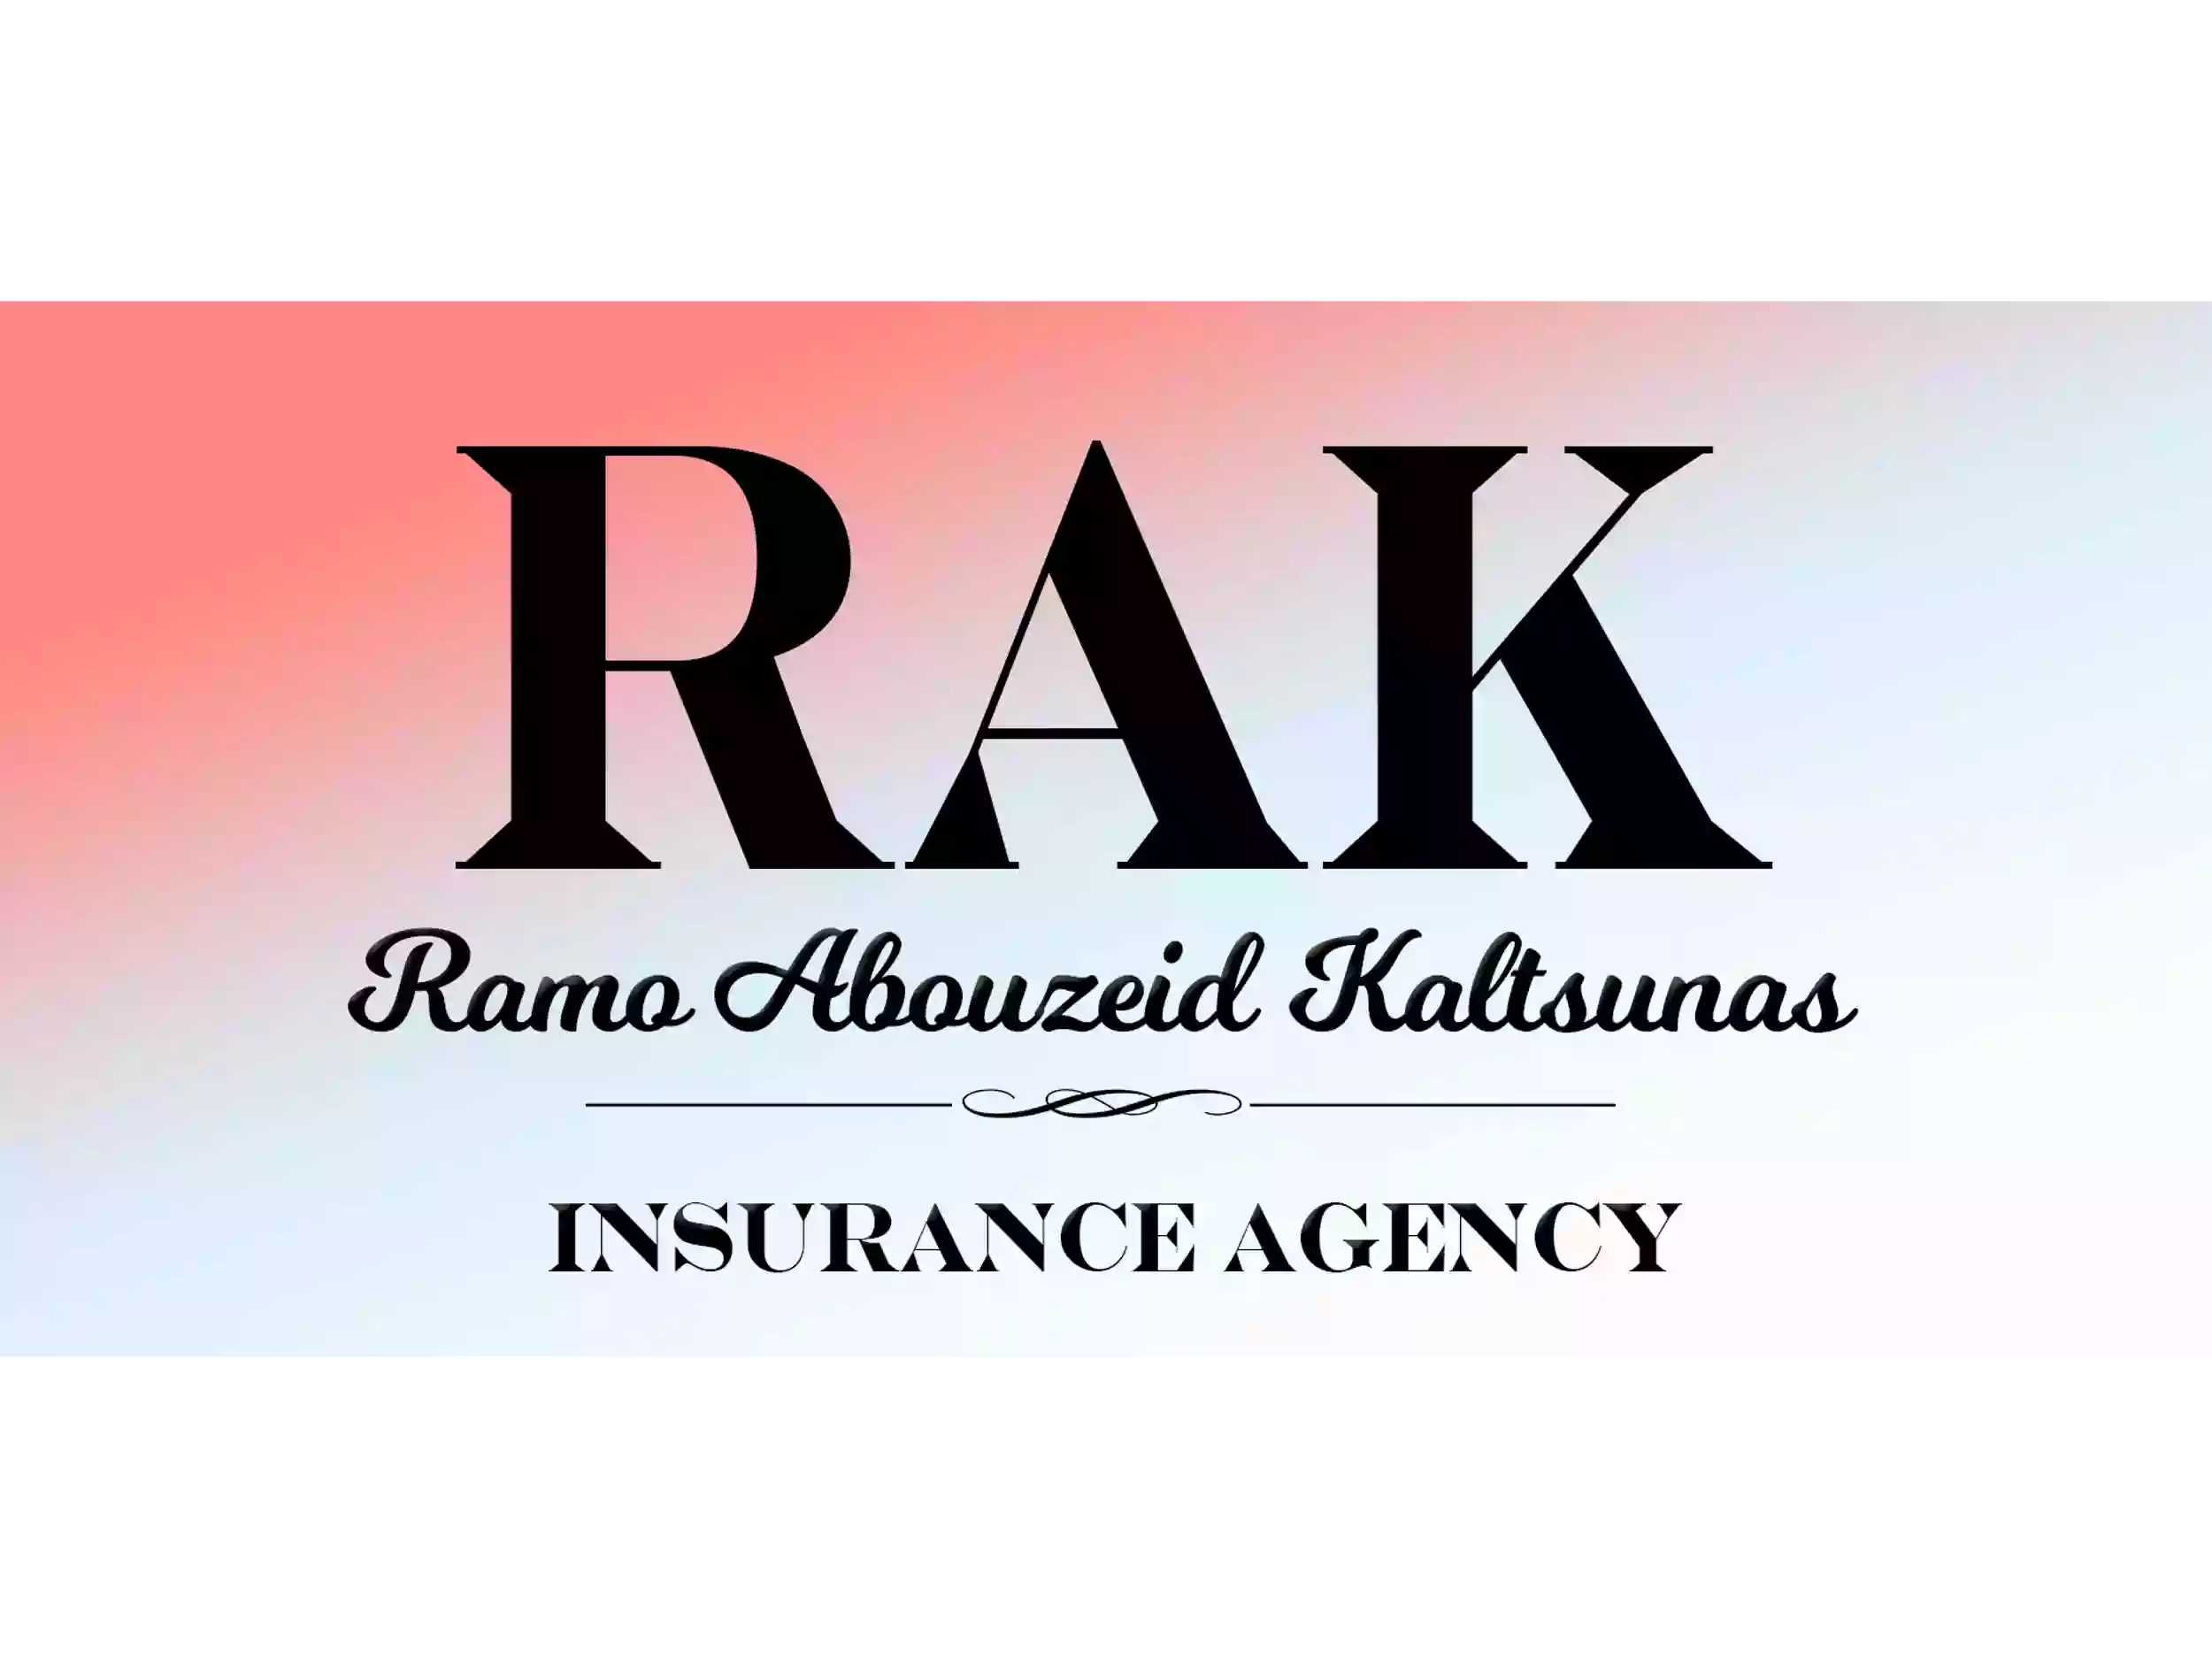 Ramo Abouzeid Kaltsunas Insurance Agency